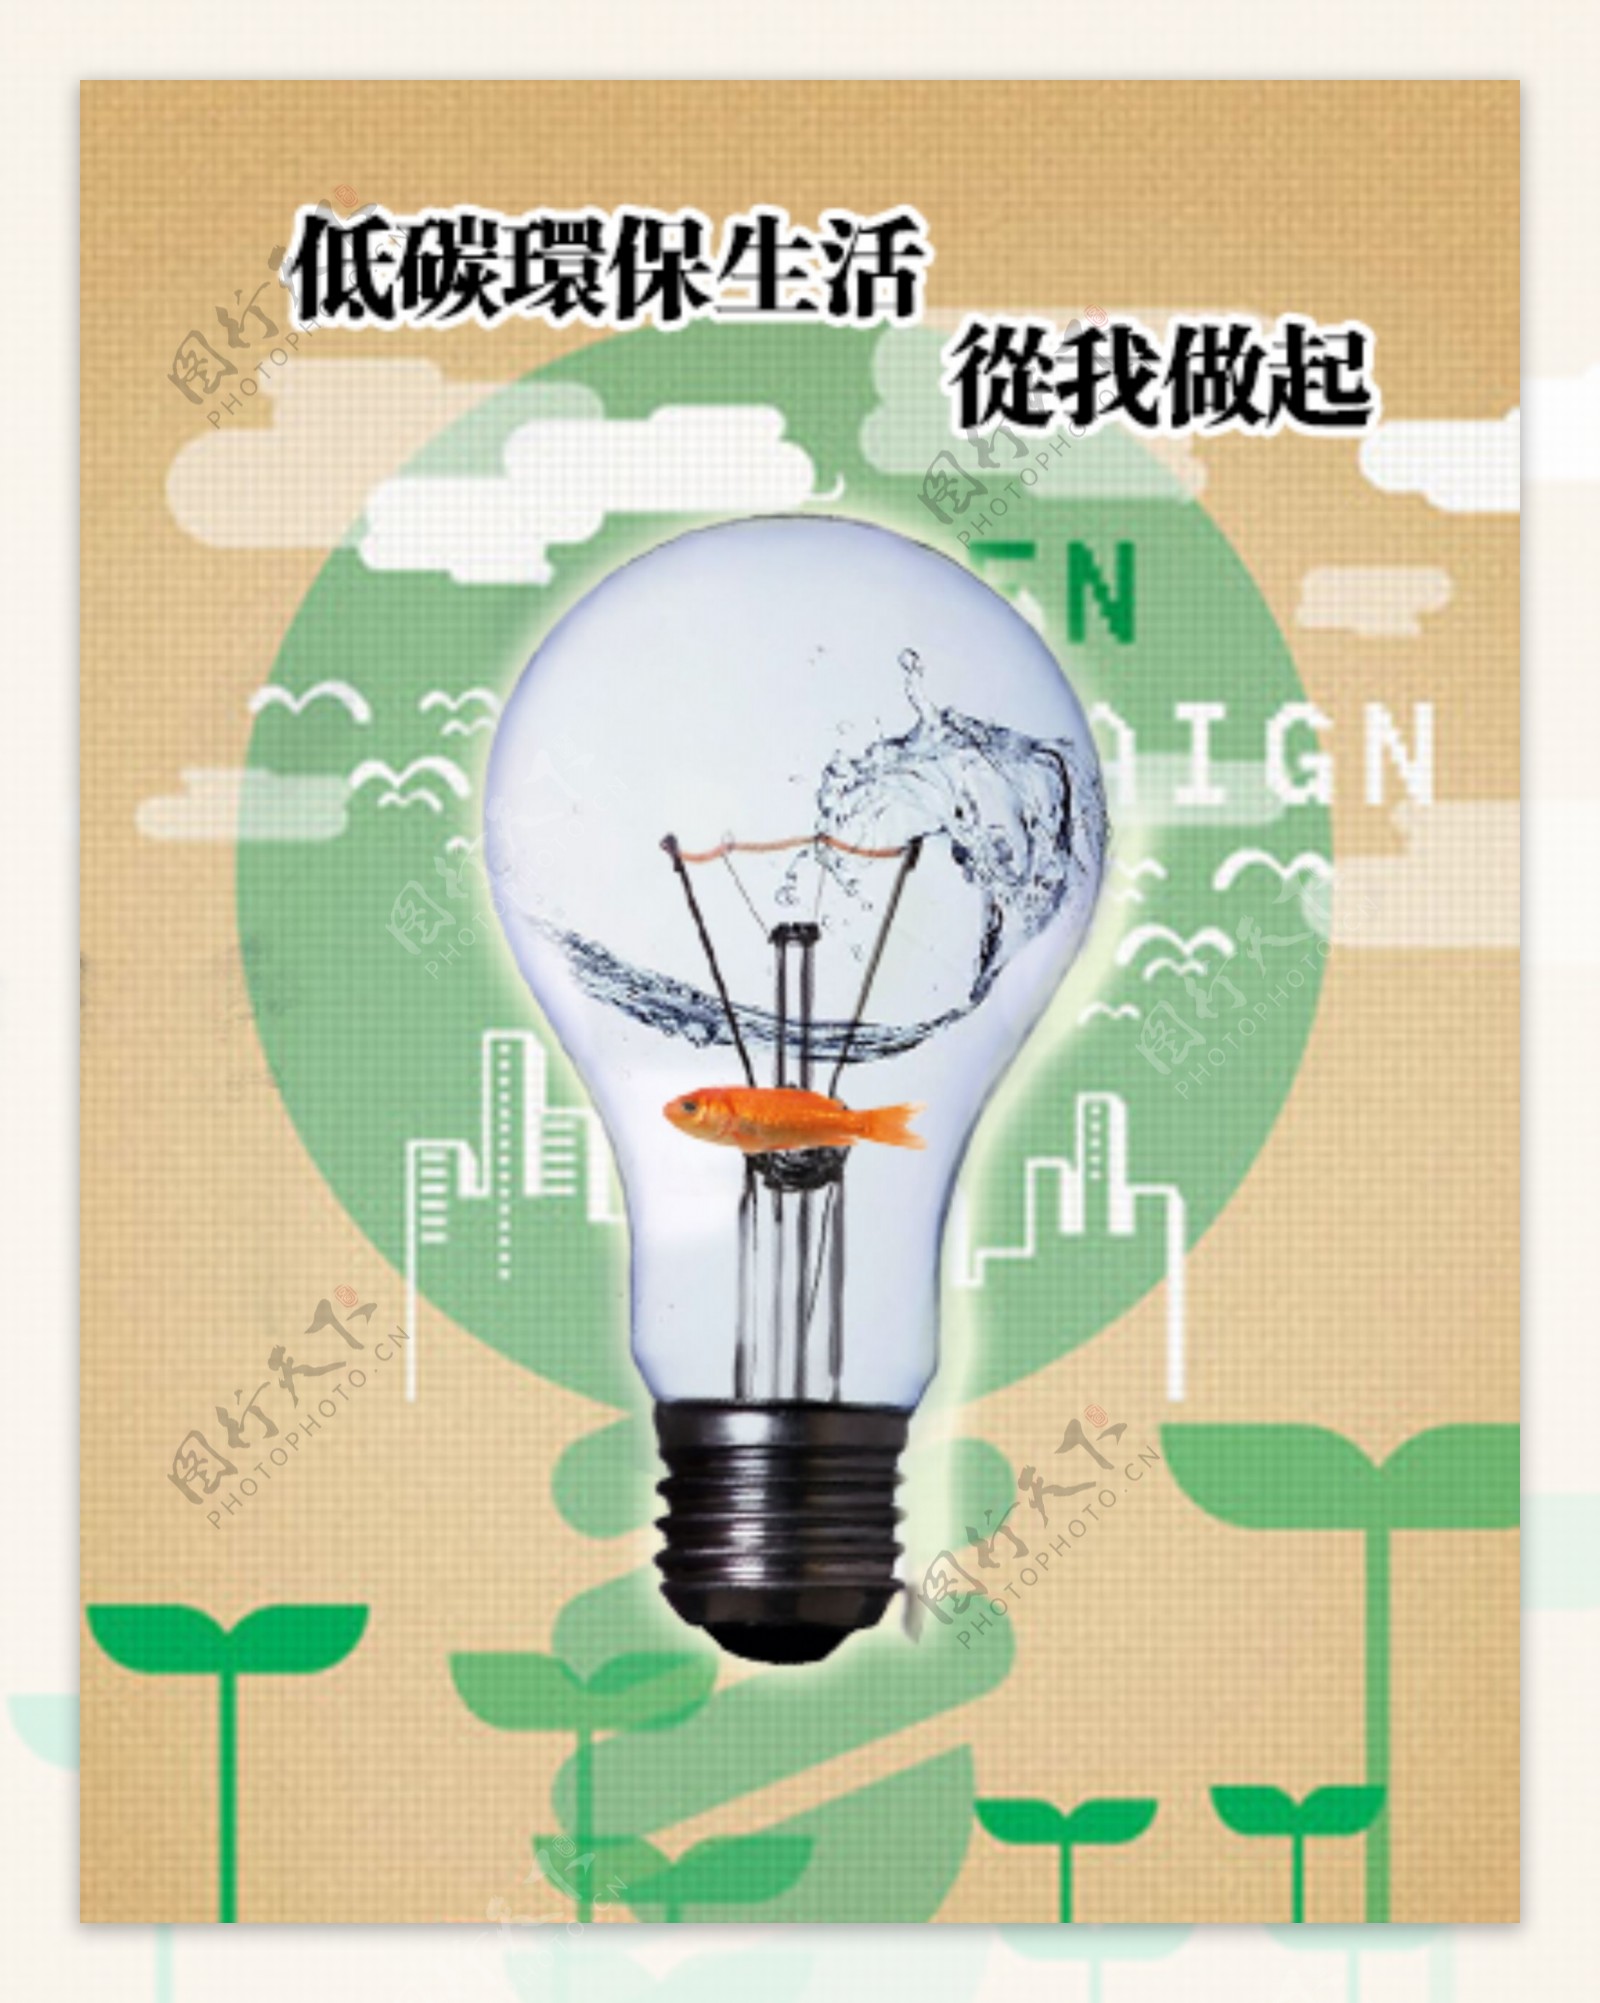 灯泡环保宣传海报节能减排低碳生活